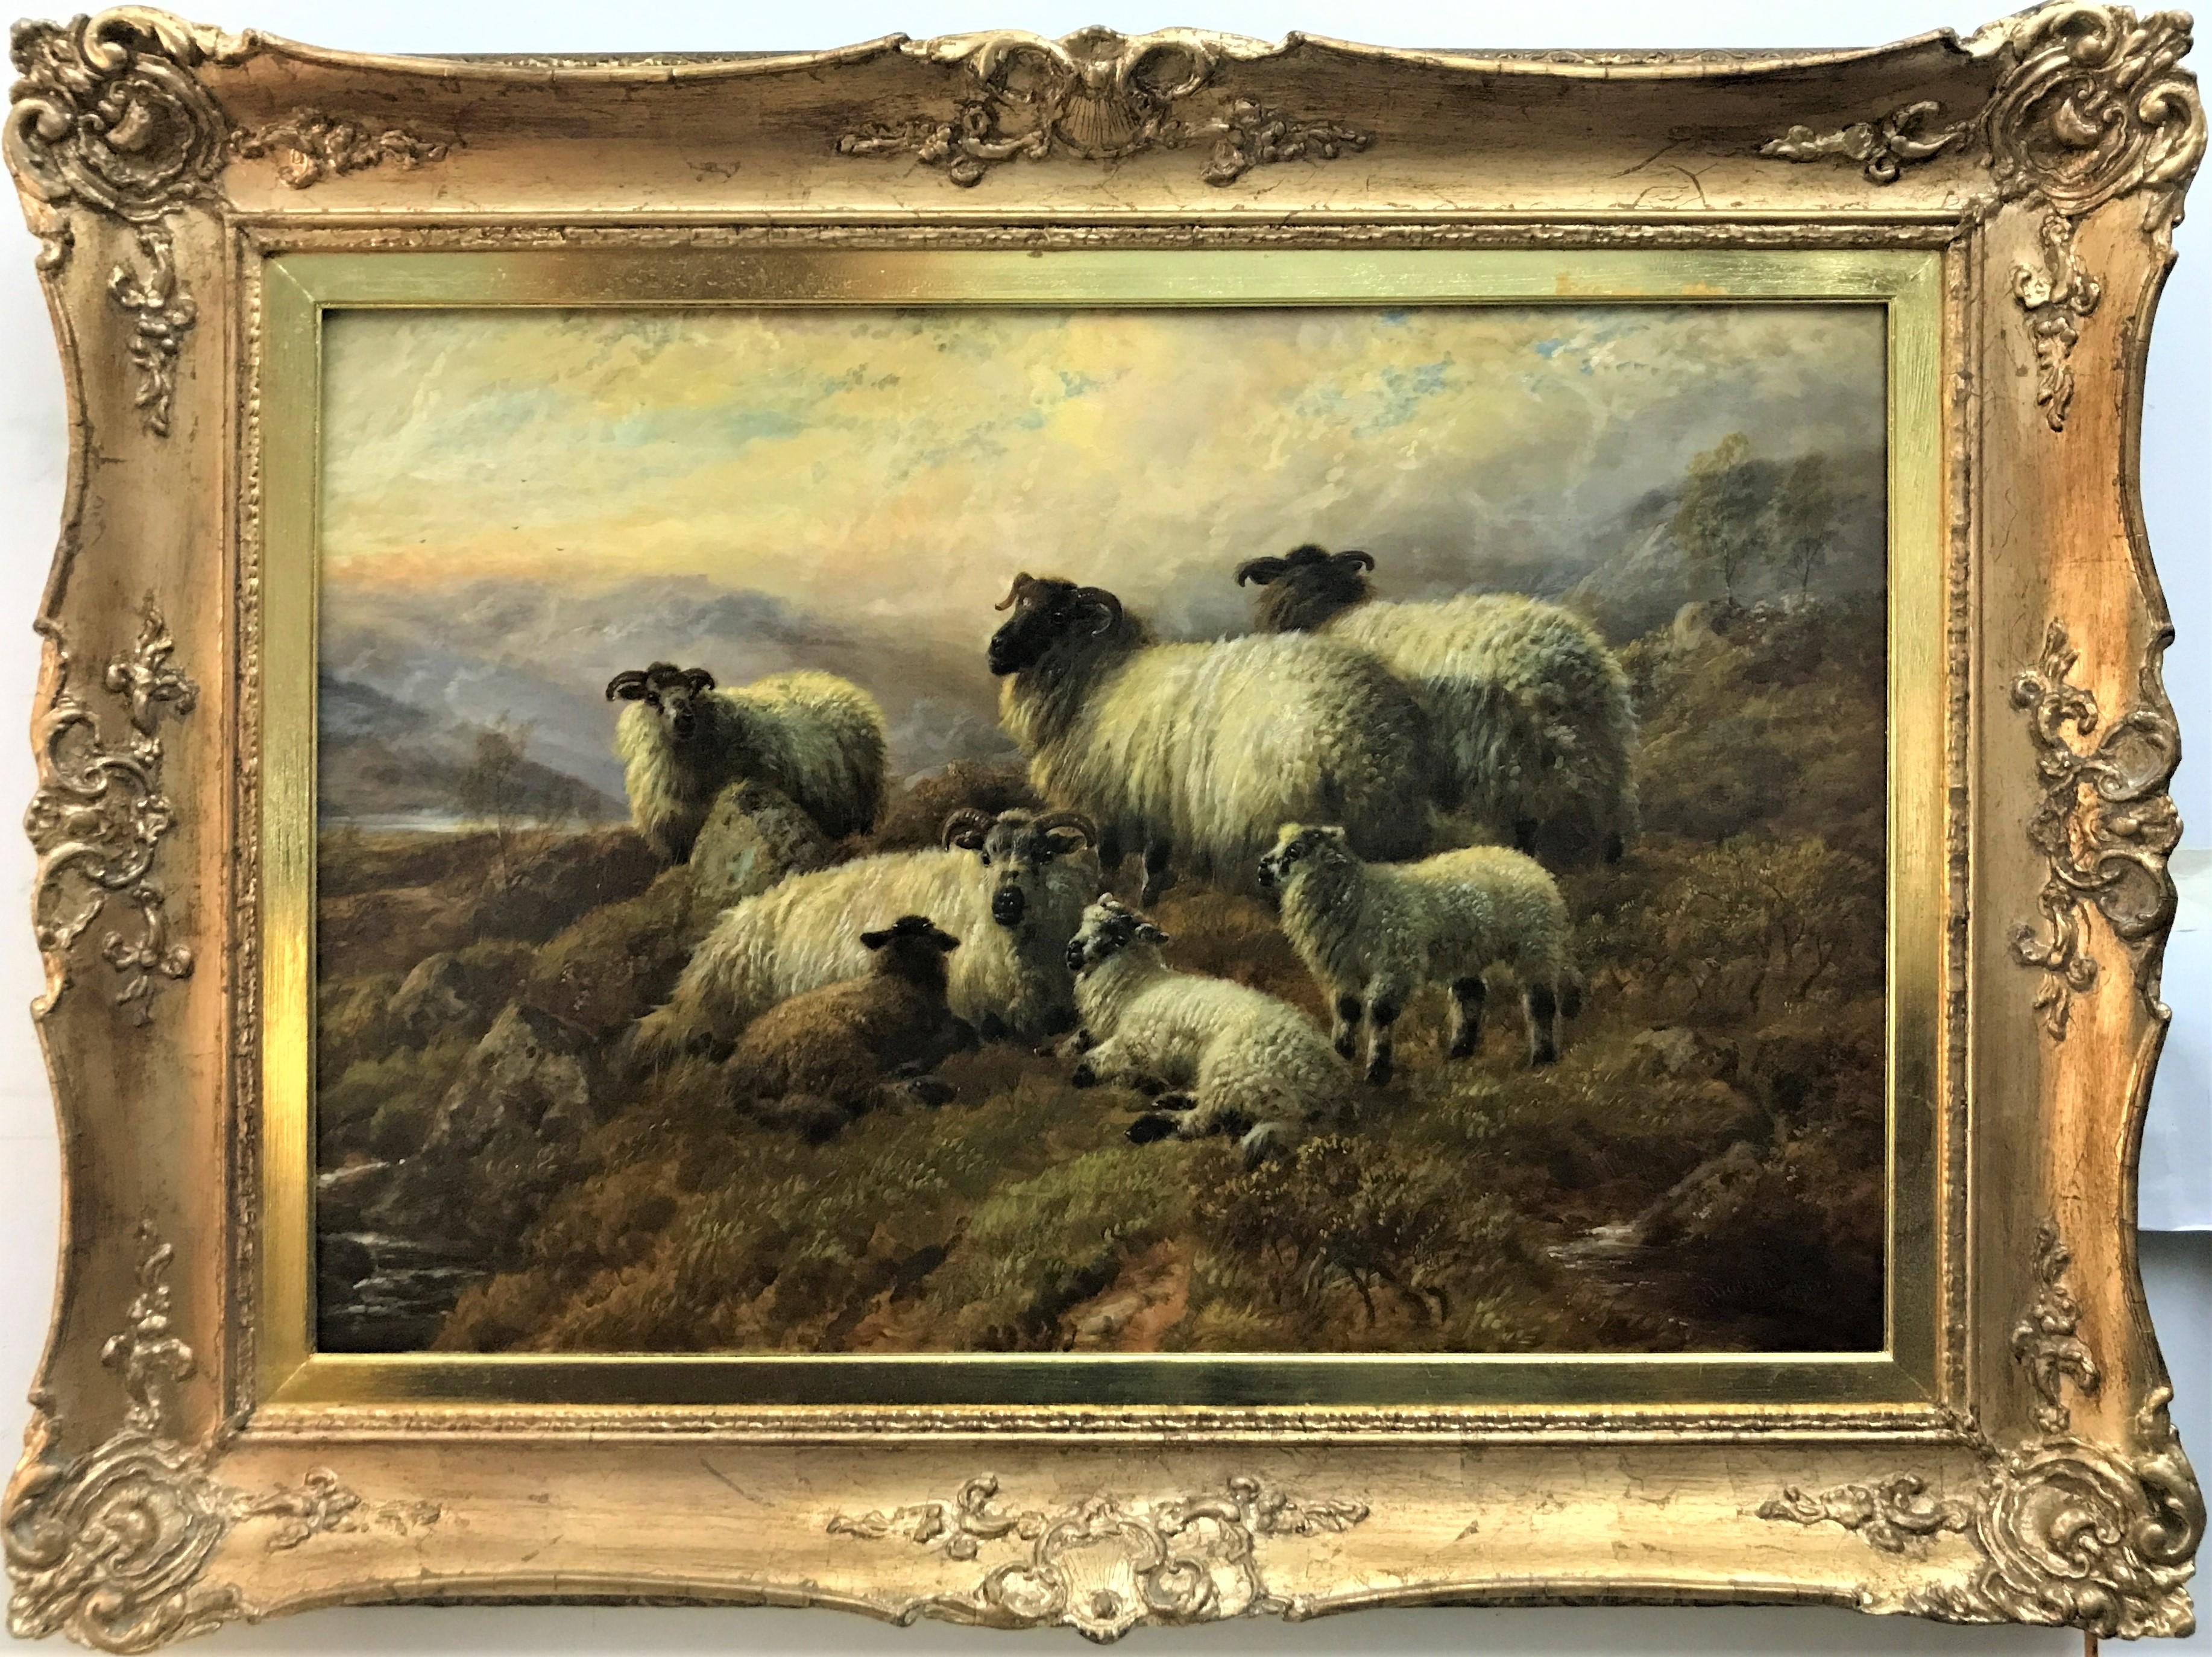 Sheep on a Hillside, Original Öl auf Leinwand, Schafe in einer Hochlandlandschaft, 1915 – Painting von Robert Watson